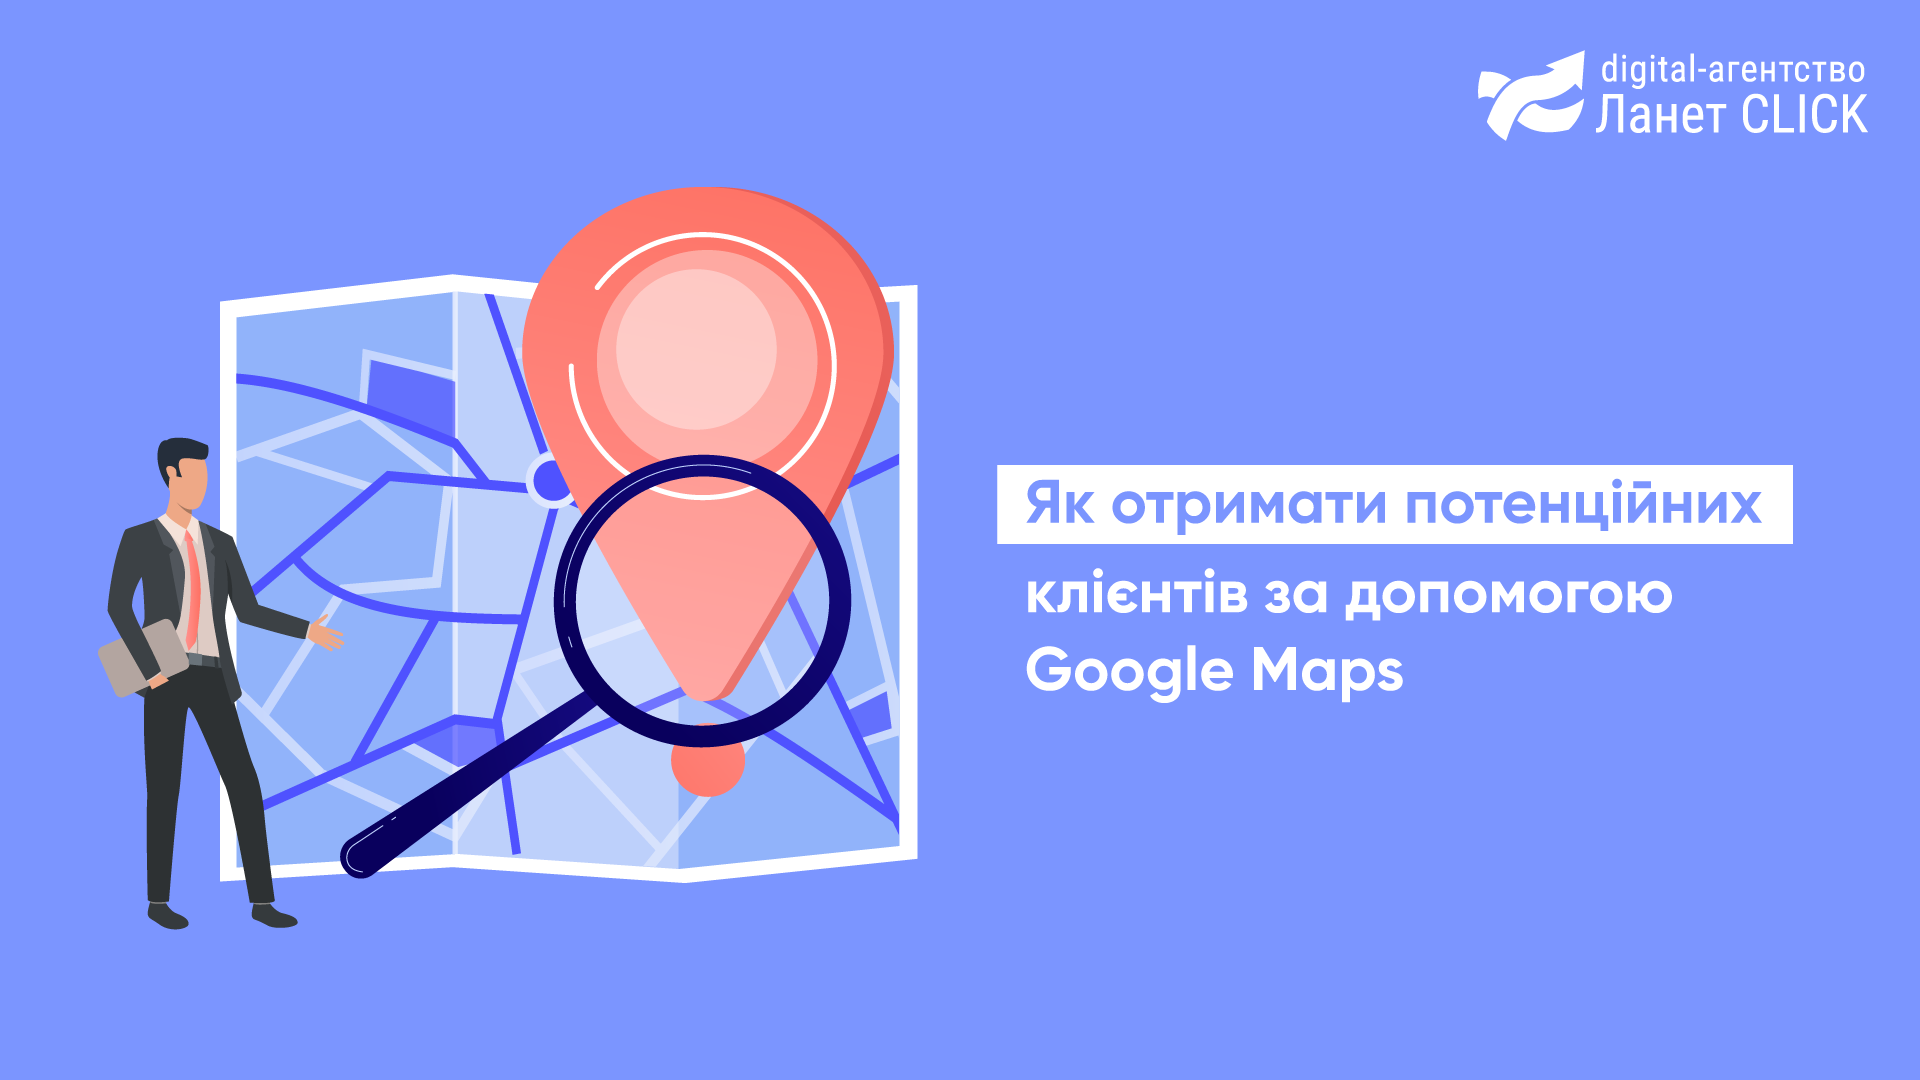 Як отримати потенційних клієнтів за допомогою Google Maps